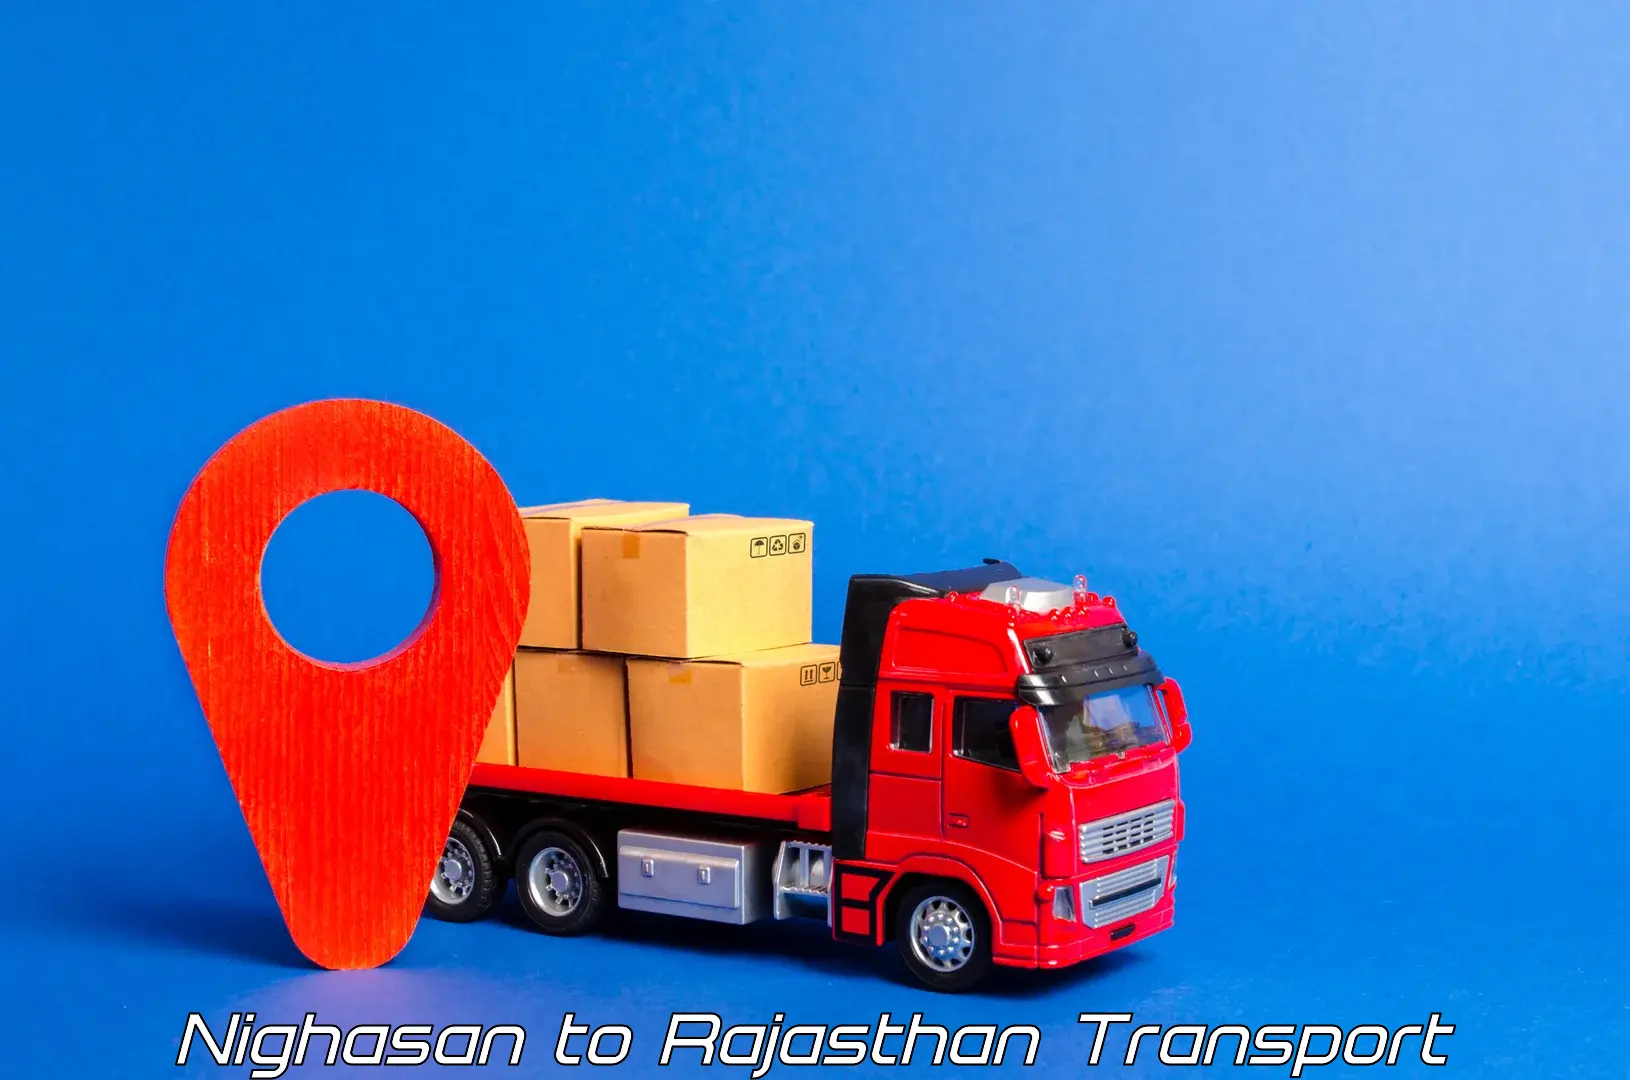 Express transport services Nighasan to Rajasthan